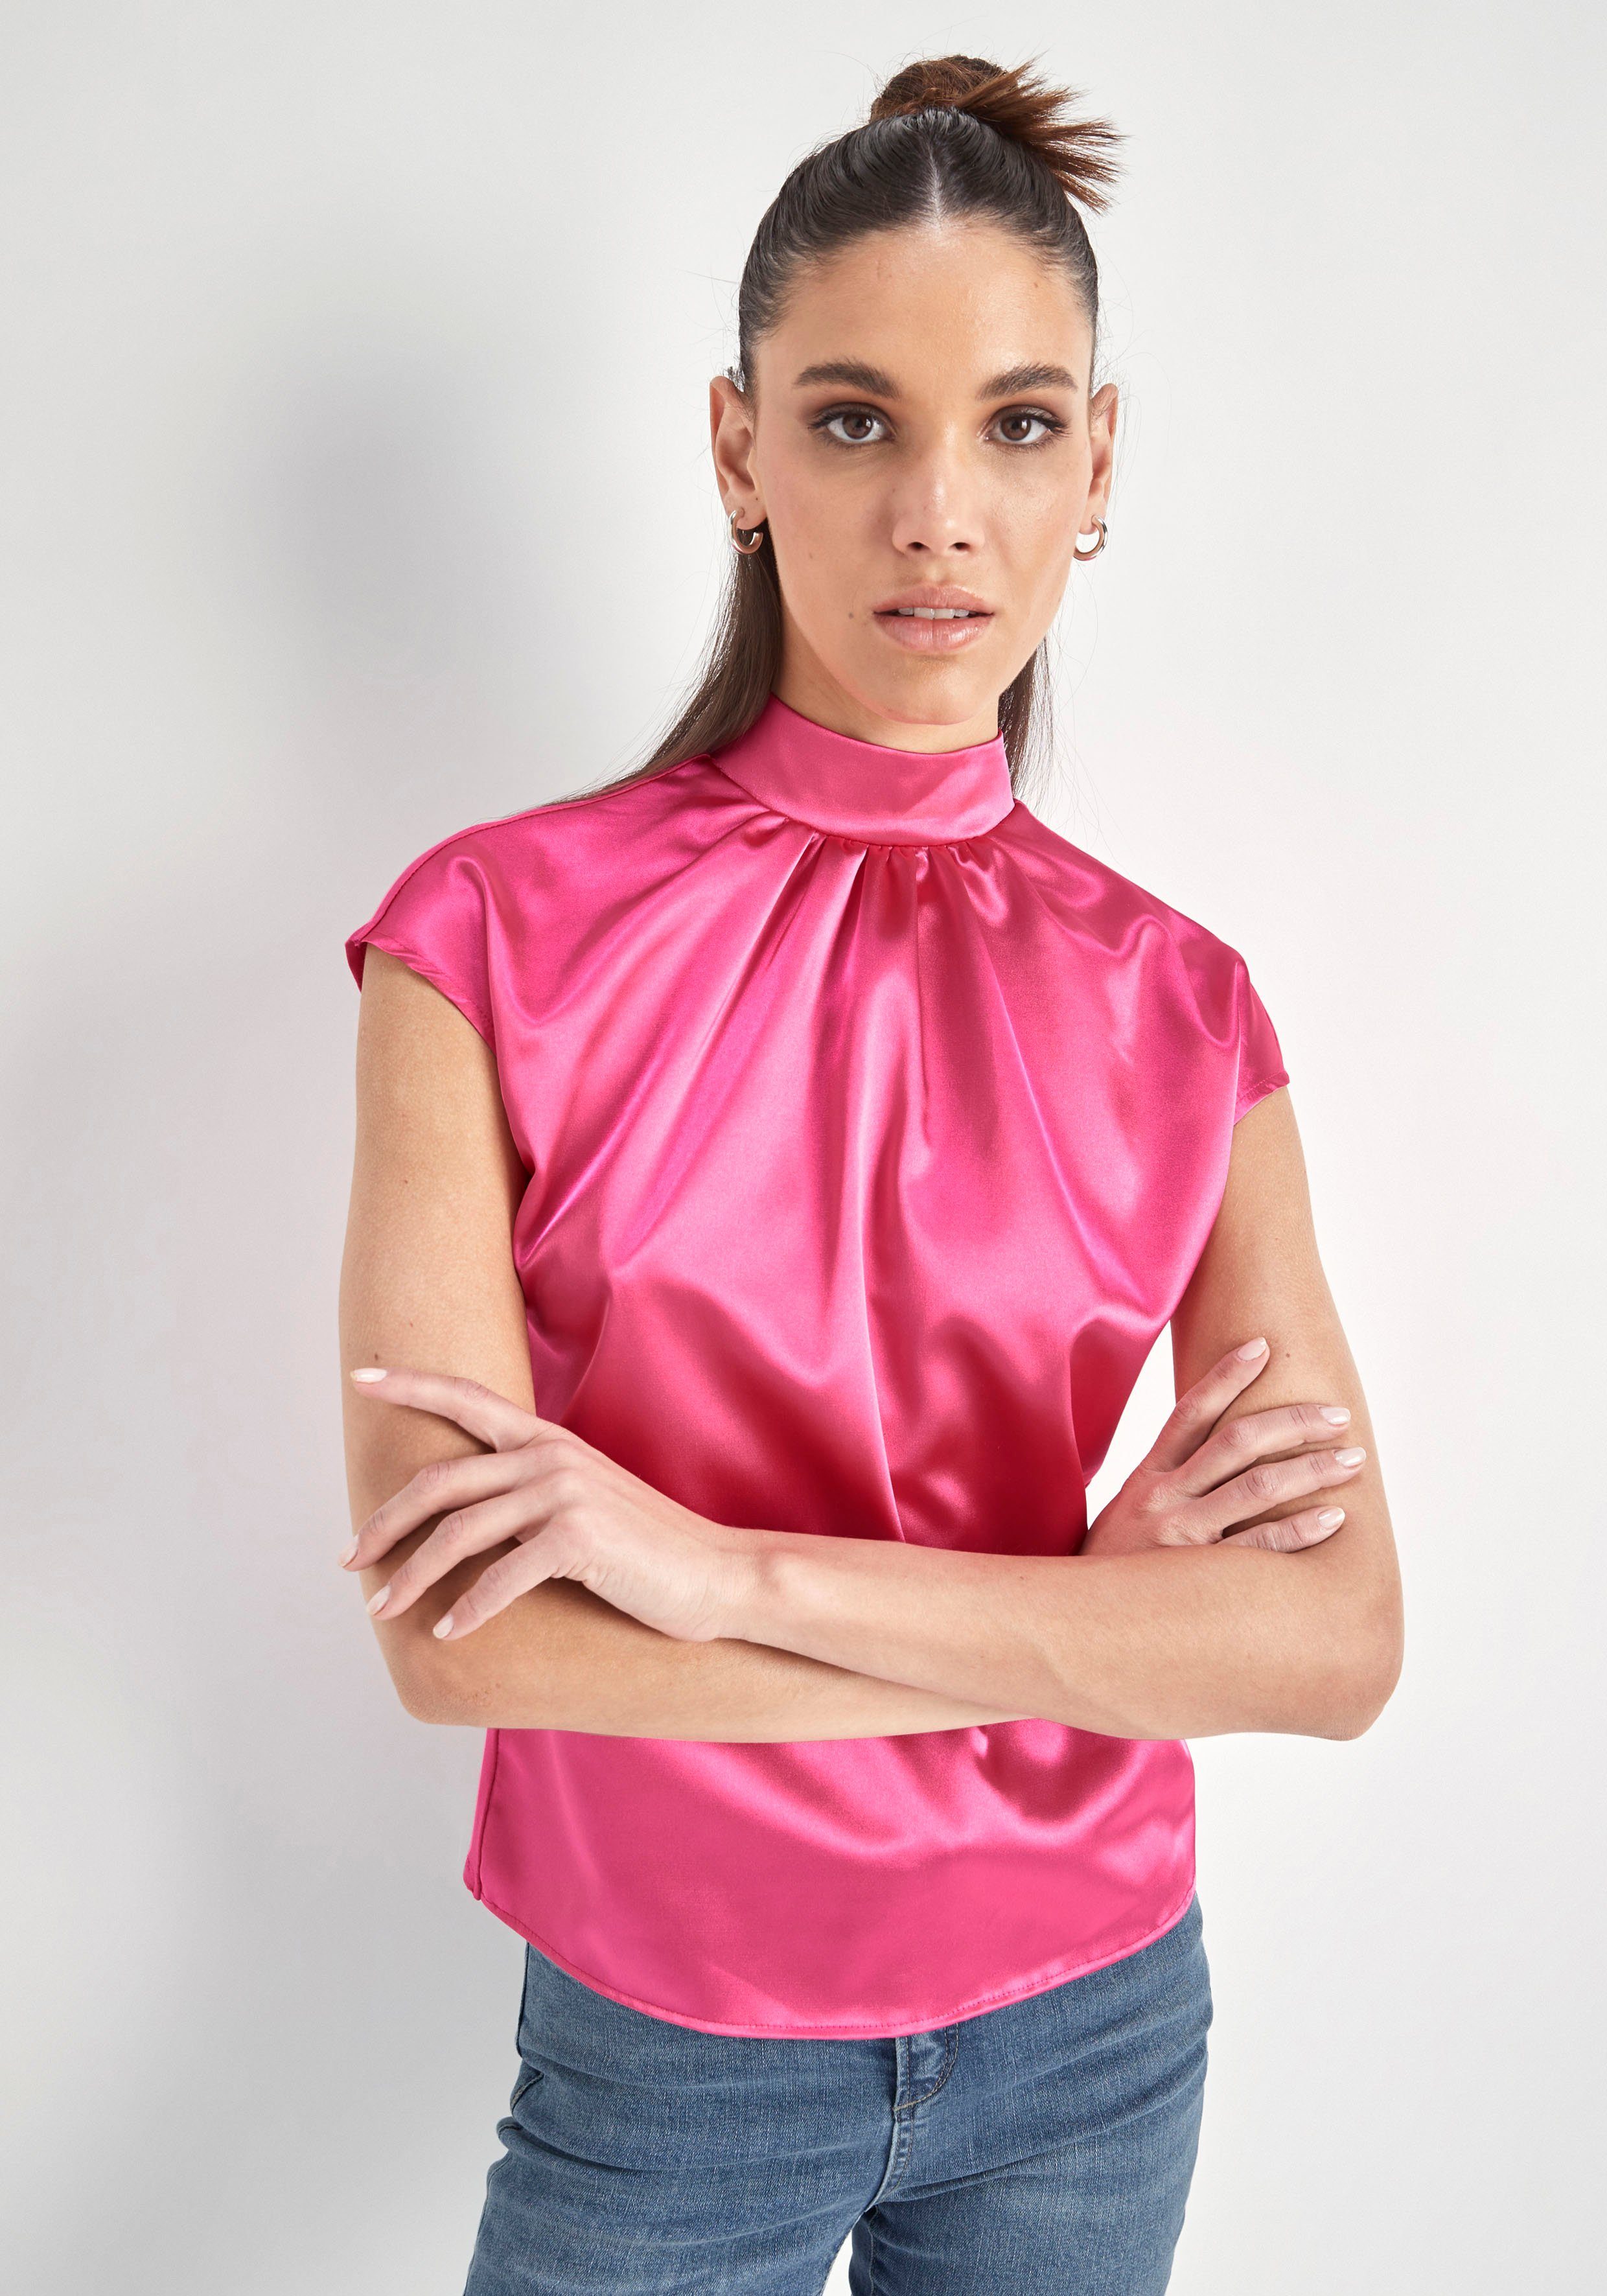 HECHTER PARIS Blusentop aus hochwertigem Material pink | Blusen